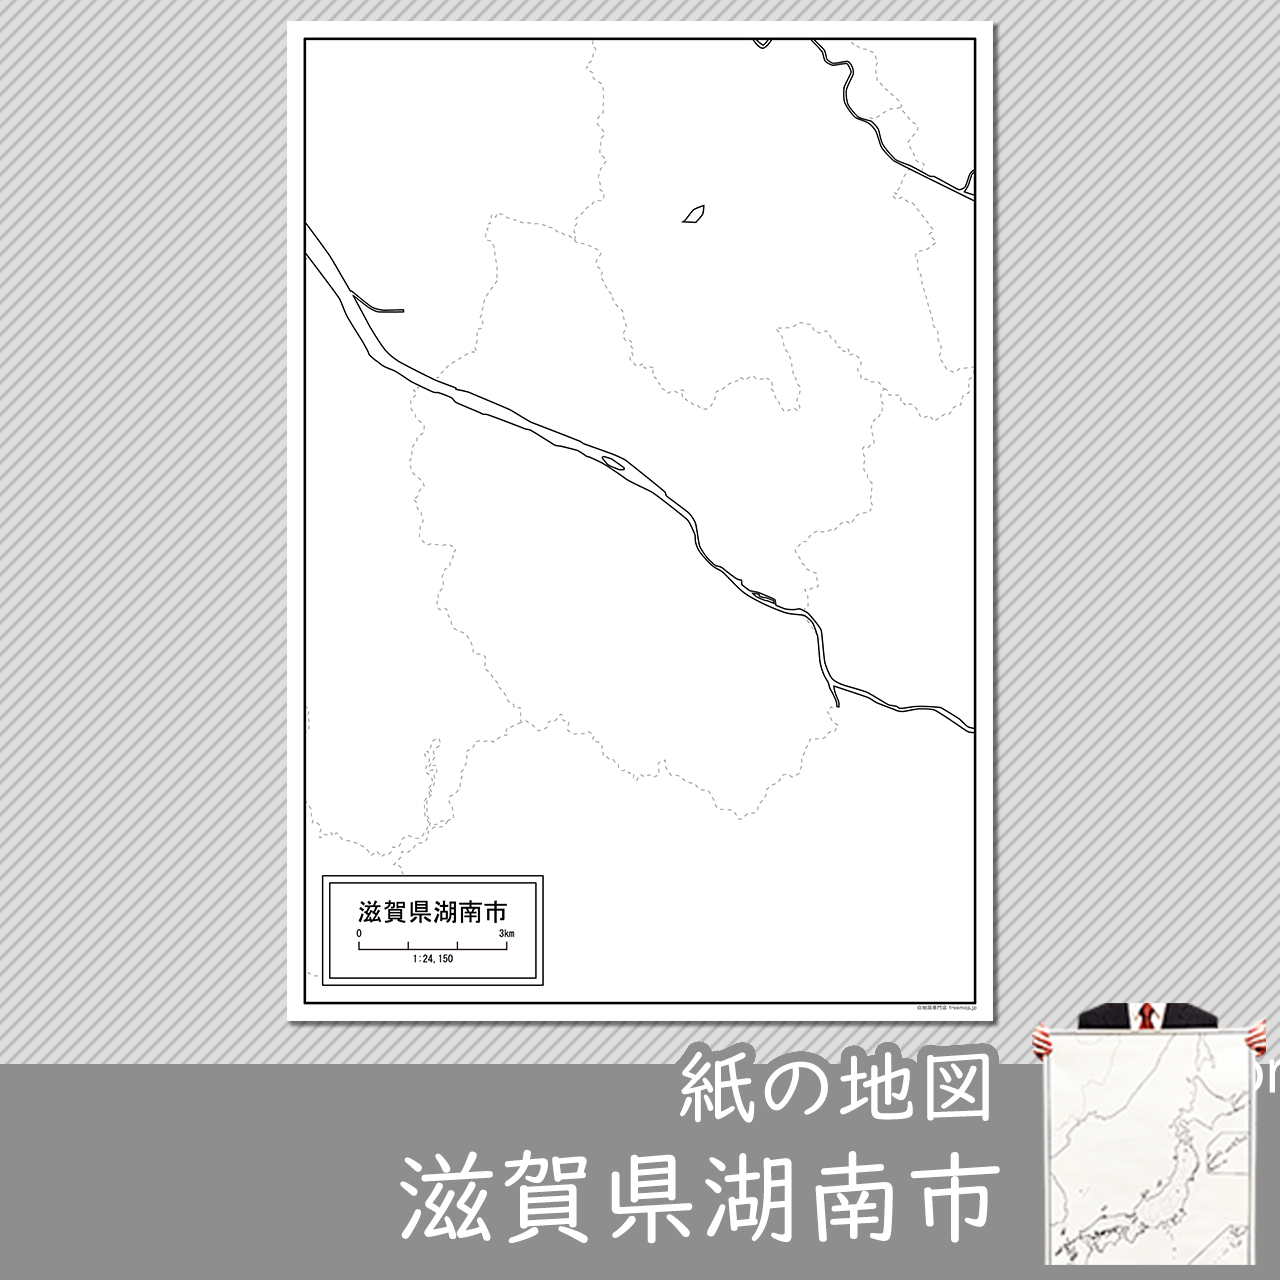 湖南市の紙の白地図のサムネイル